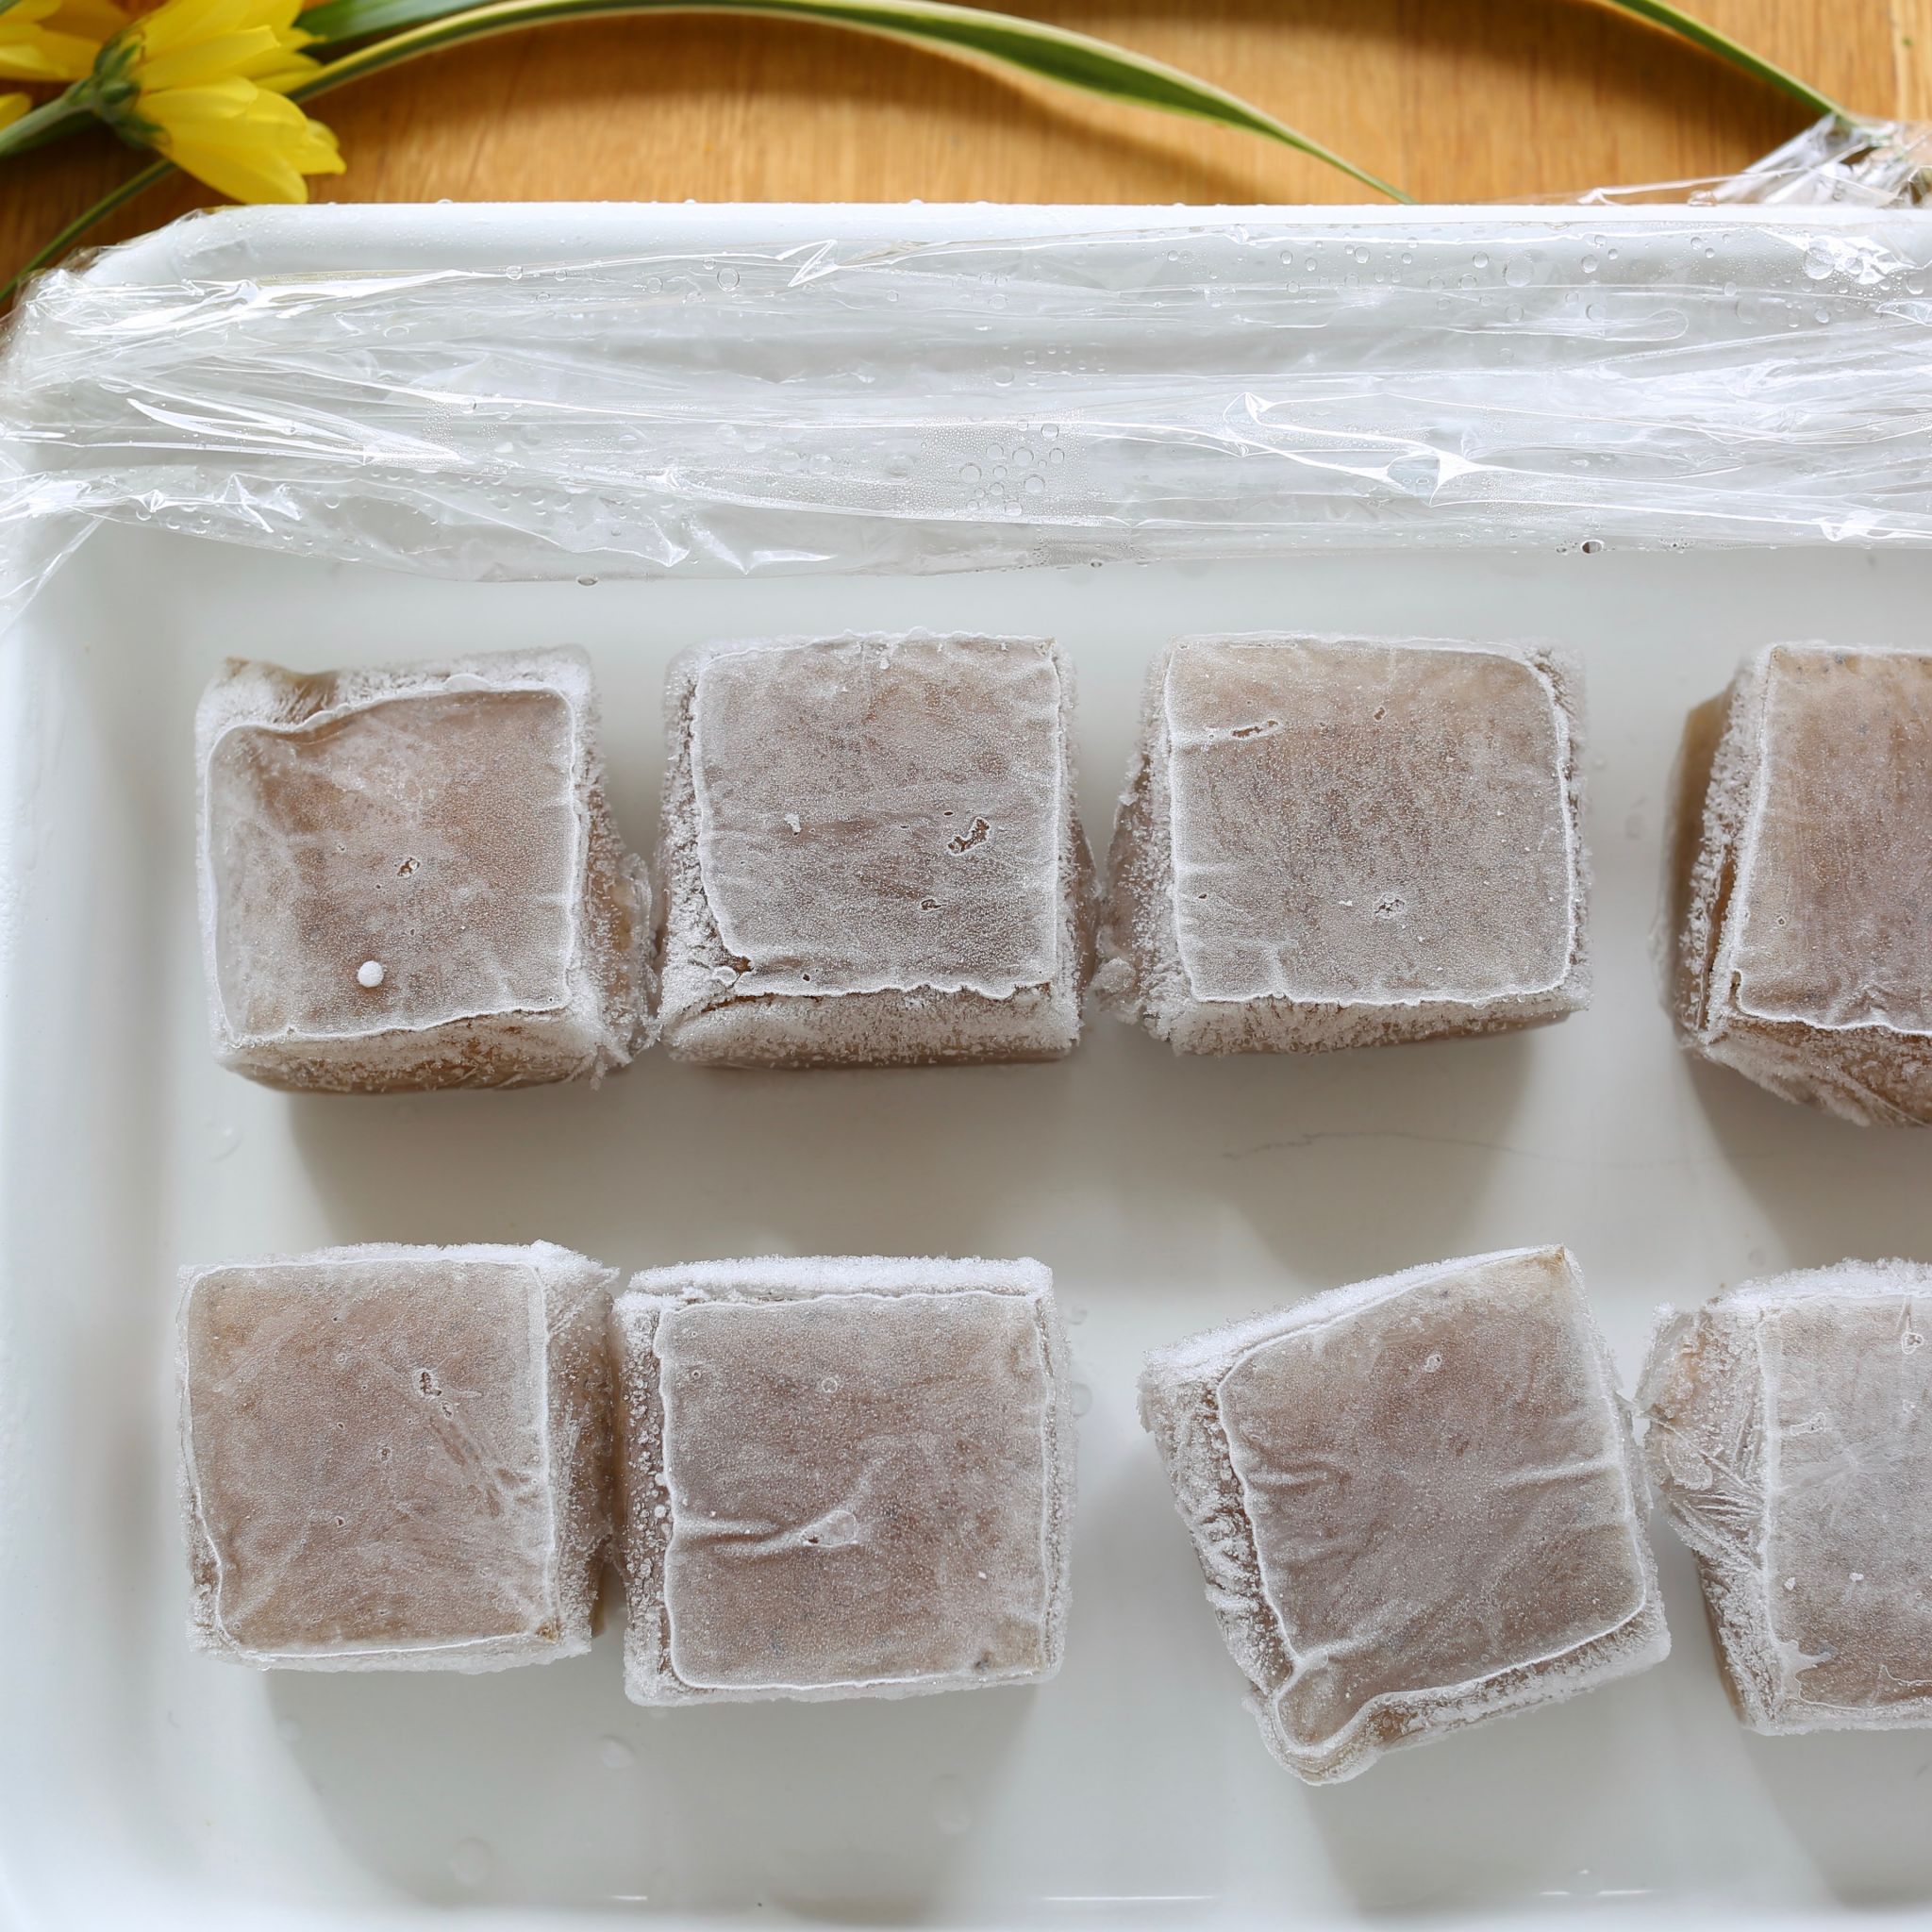 氷こんにゃくの作り方 冷凍して肉もどきを作る方法 やまでら くみこ のレシピ